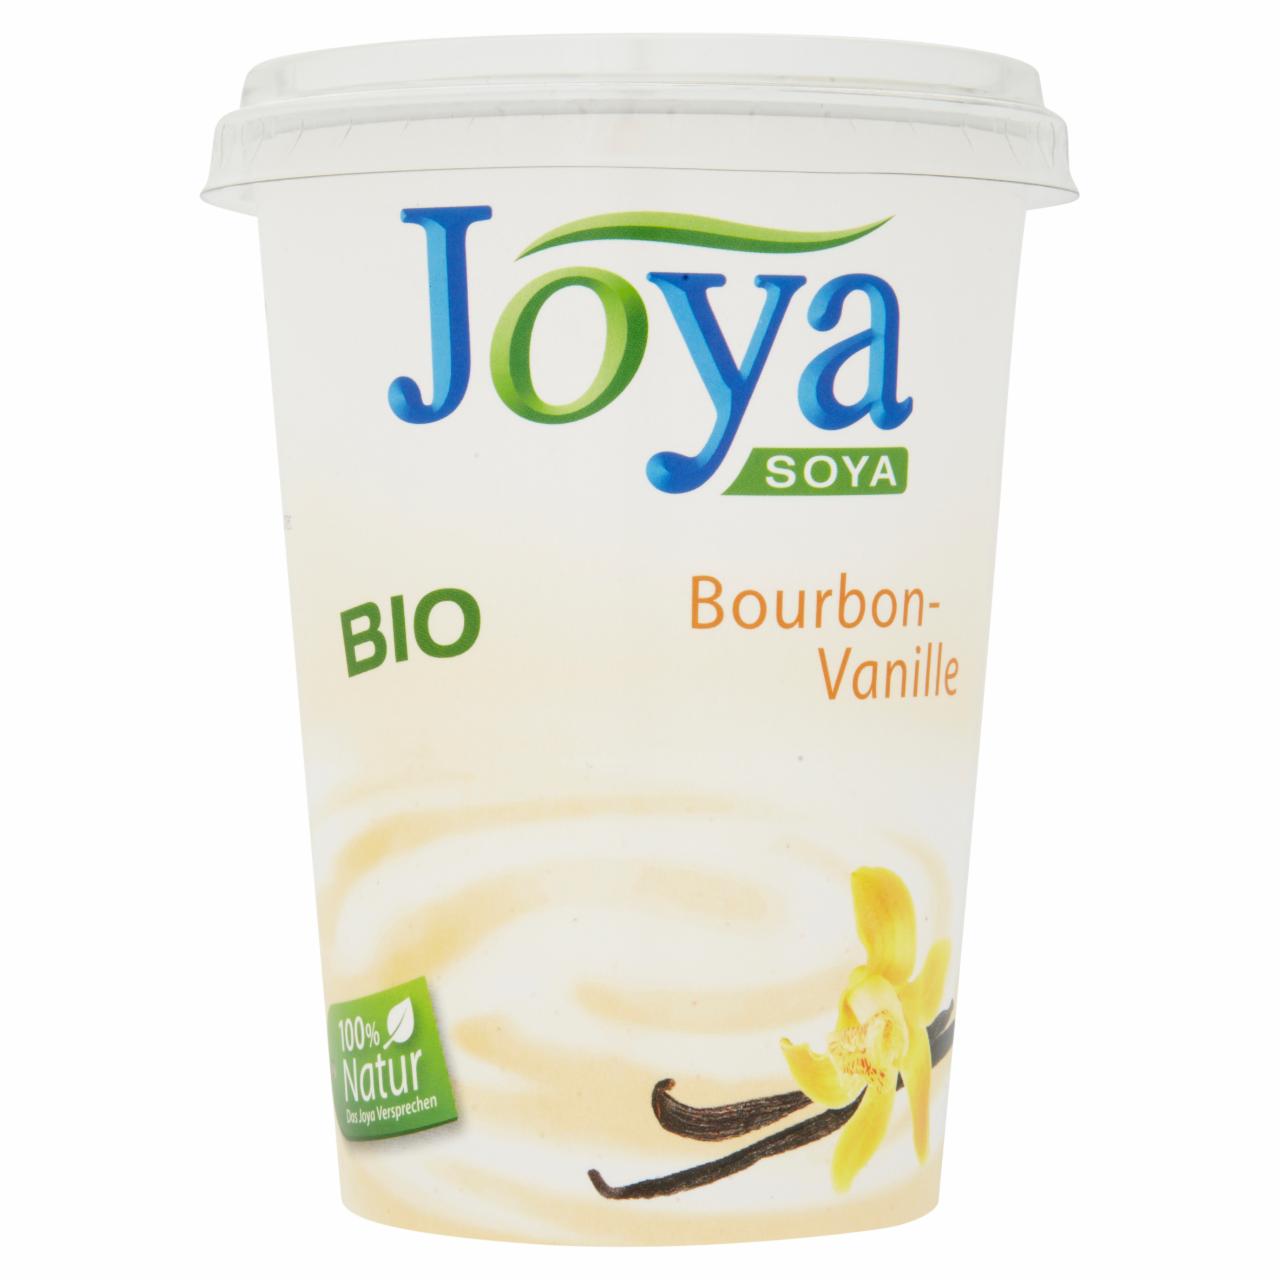 Képek - Joya Soya BIO joghurtkultúrával beoltott szójakészítmény bourbon vaníliával 500 g